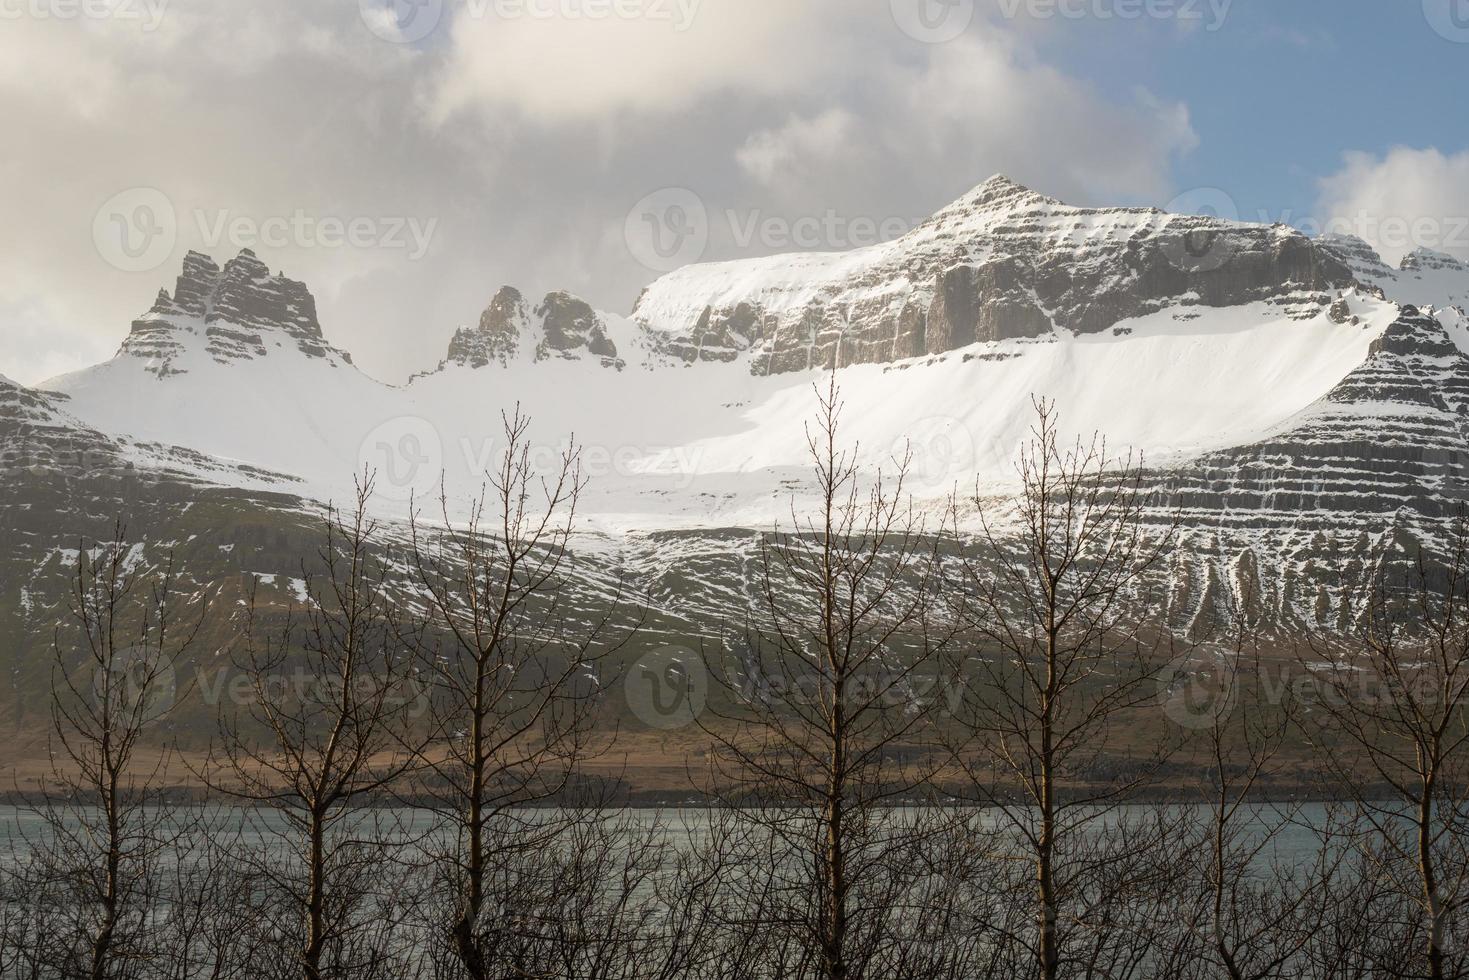 la belle vue sur les montagnes de stodvarfjordur, la ville de pêcheurs de la région est de l'islande. l'est de l'islande possède des fjords à couper le souffle et de charmants villages de pêcheurs. photo